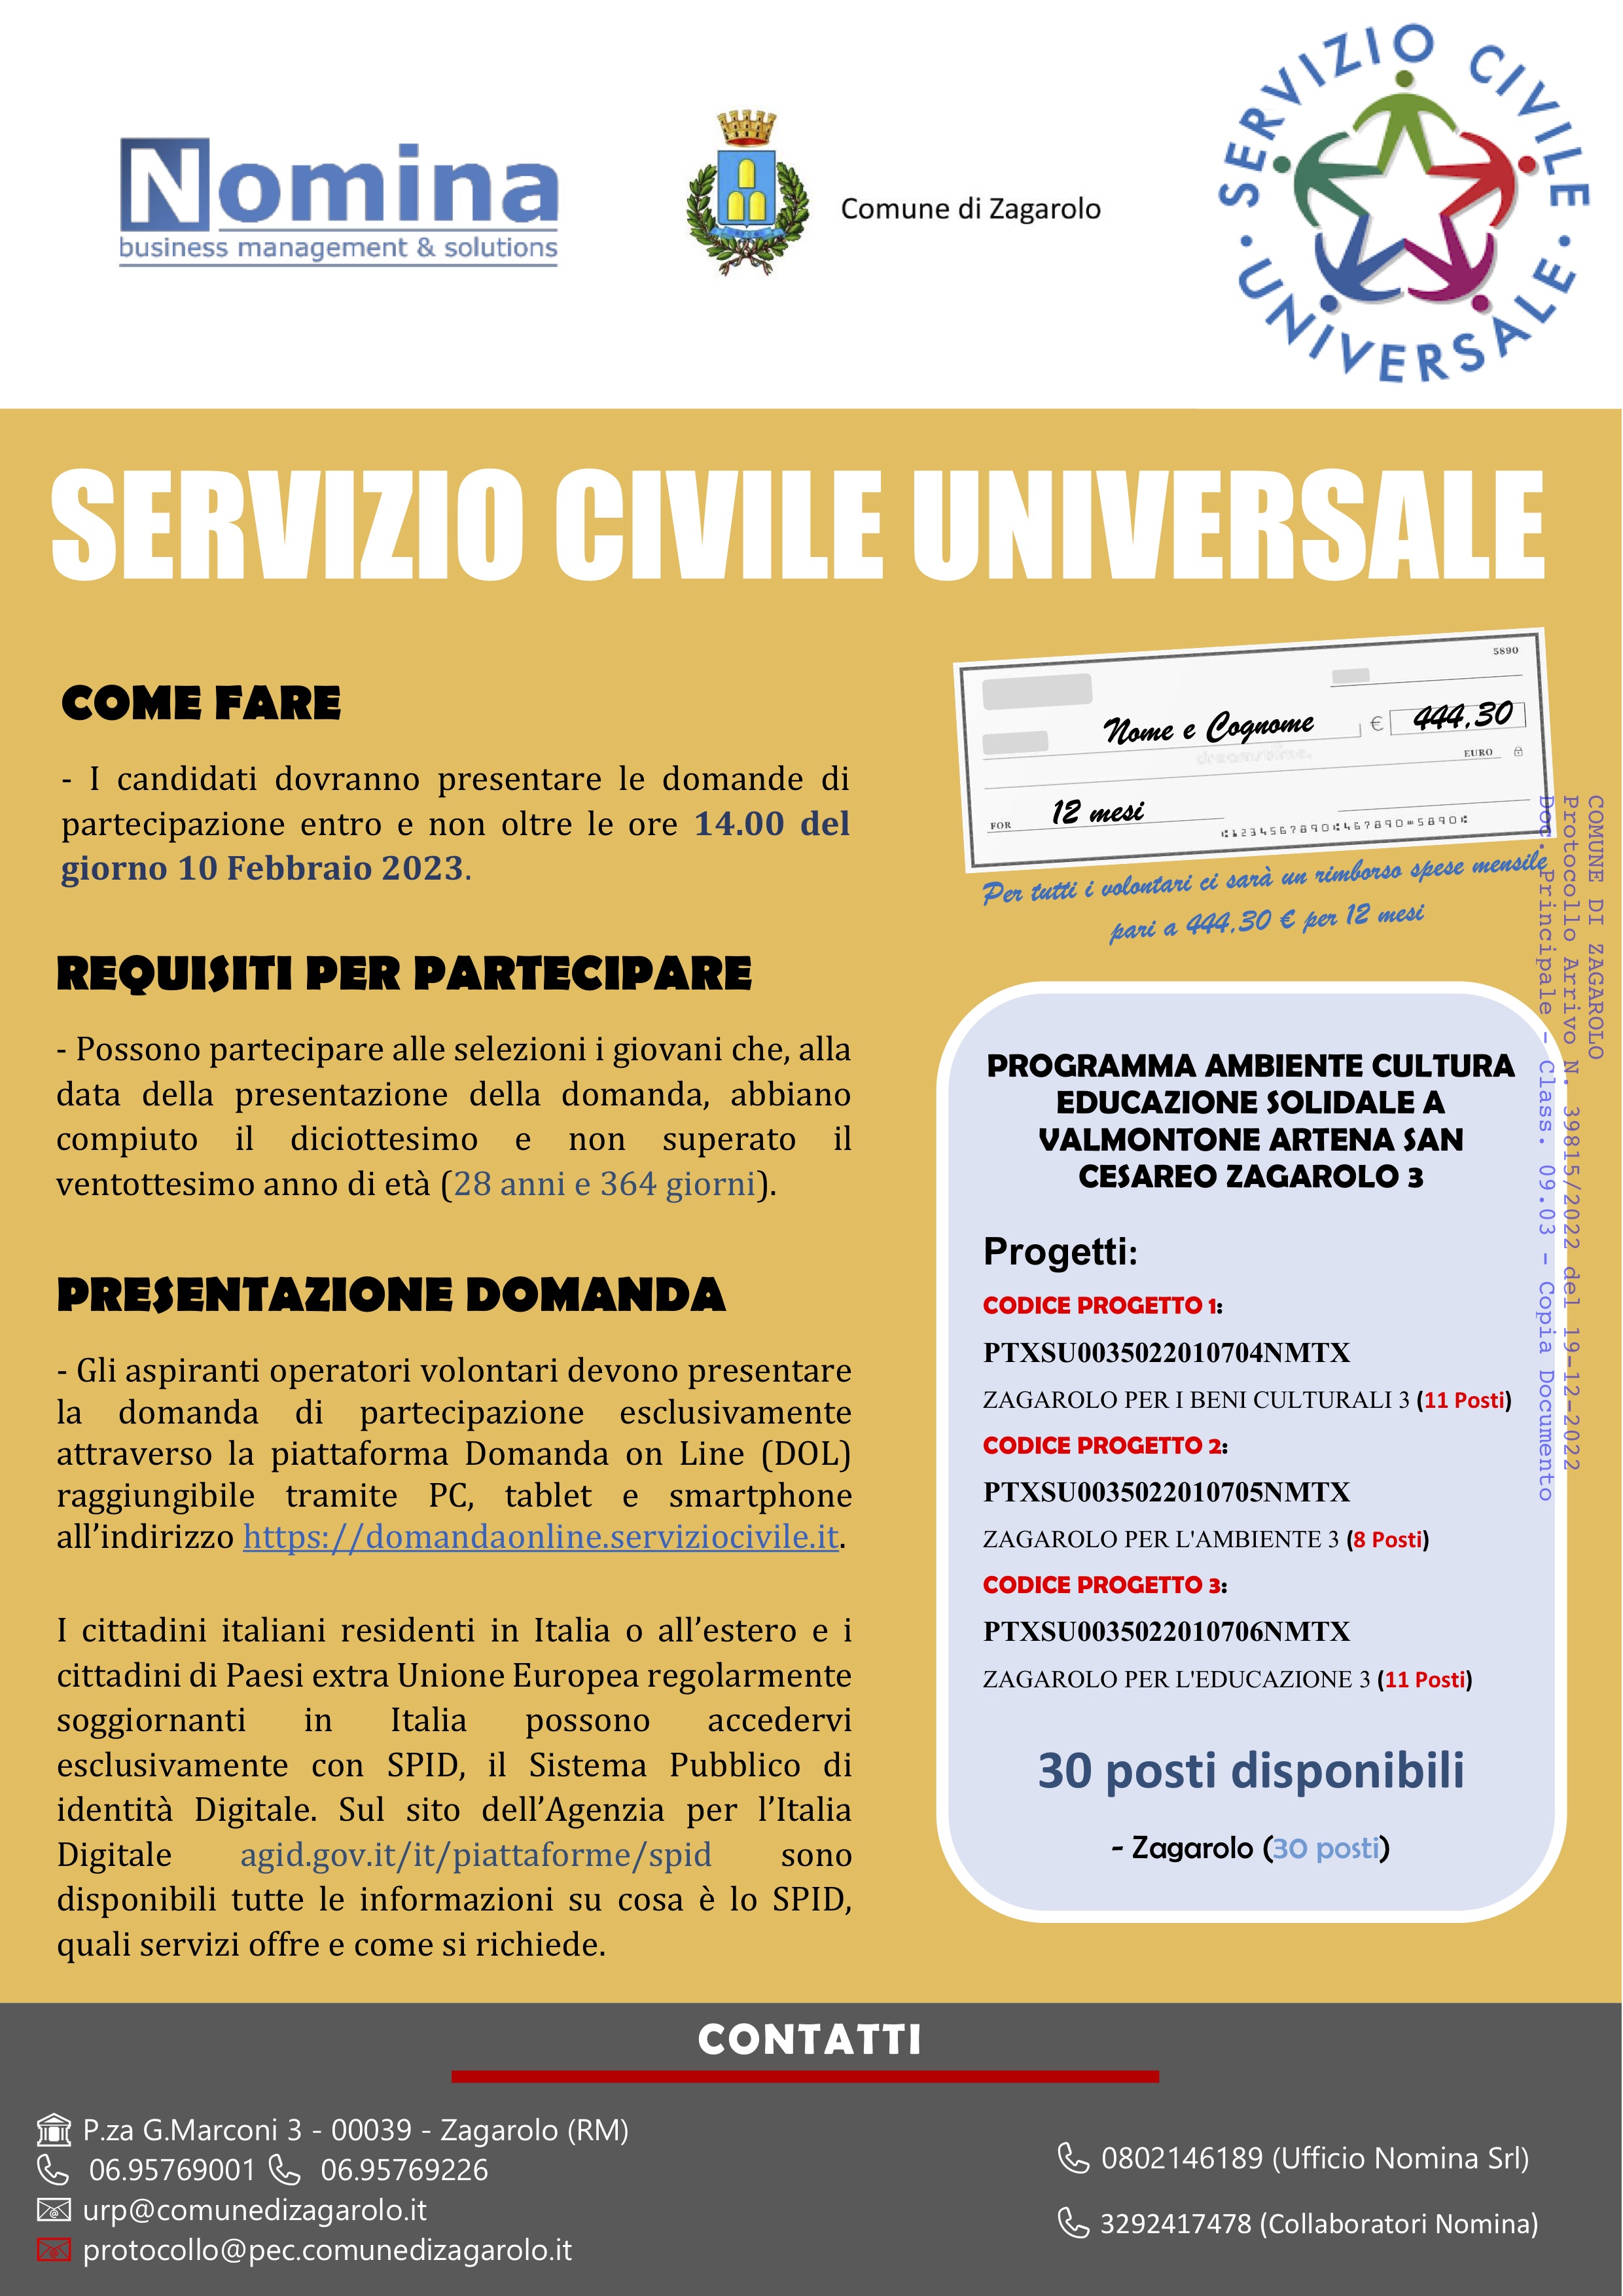 SERVIZIO CIVILE UNIVERSALE 2023-2024, PUBBLICATO IL BANDO PER DIVENTARE OPERATORE VOLONTARIO